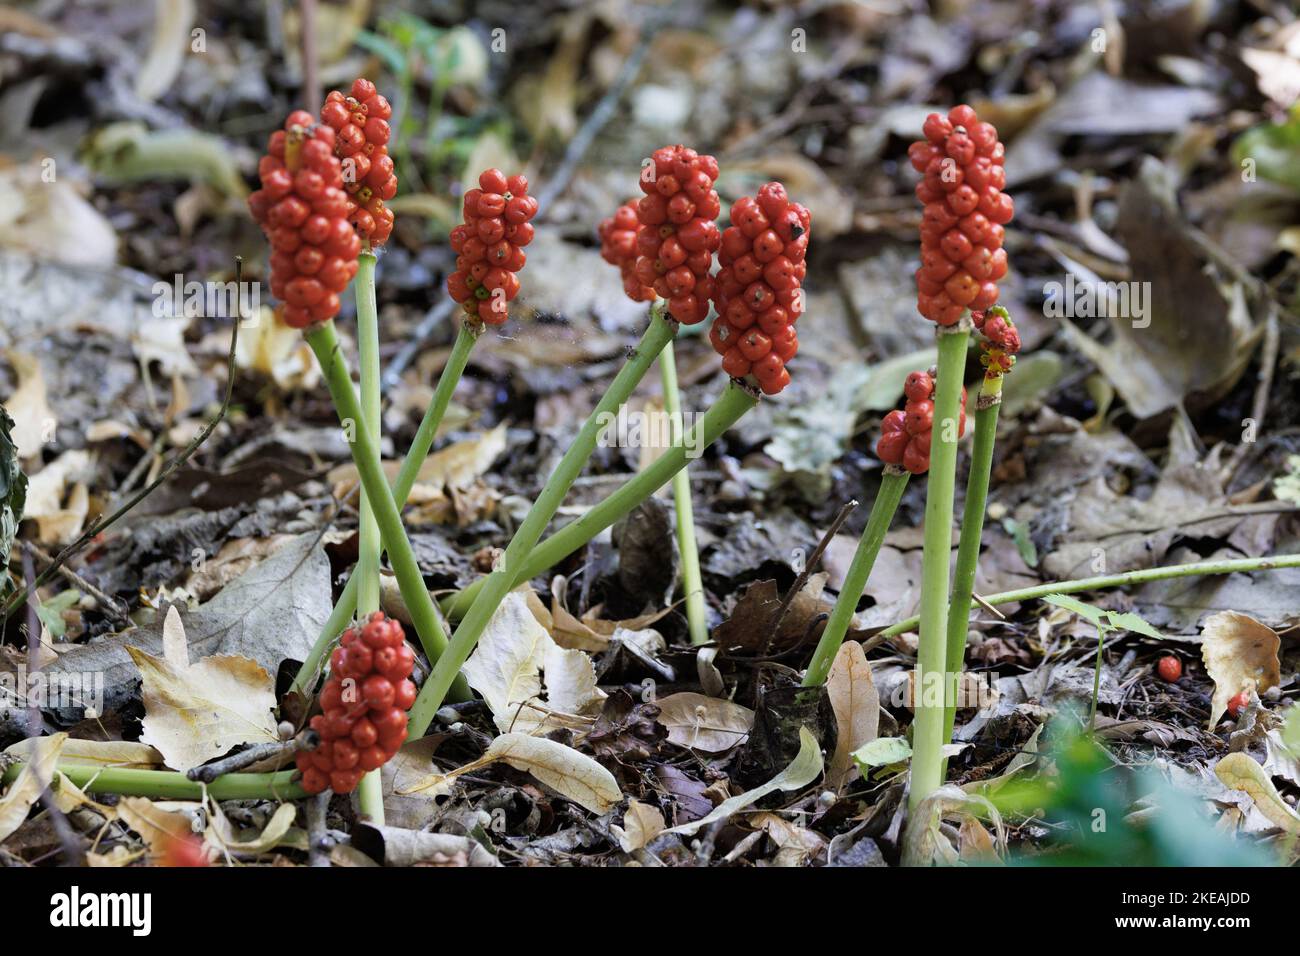 Signori-e-Signore, arrowroot portland, cucucucoopint (Arum maculatum), infuuttescenze con frutti rossi maturi, Germania, Baviera Foto Stock